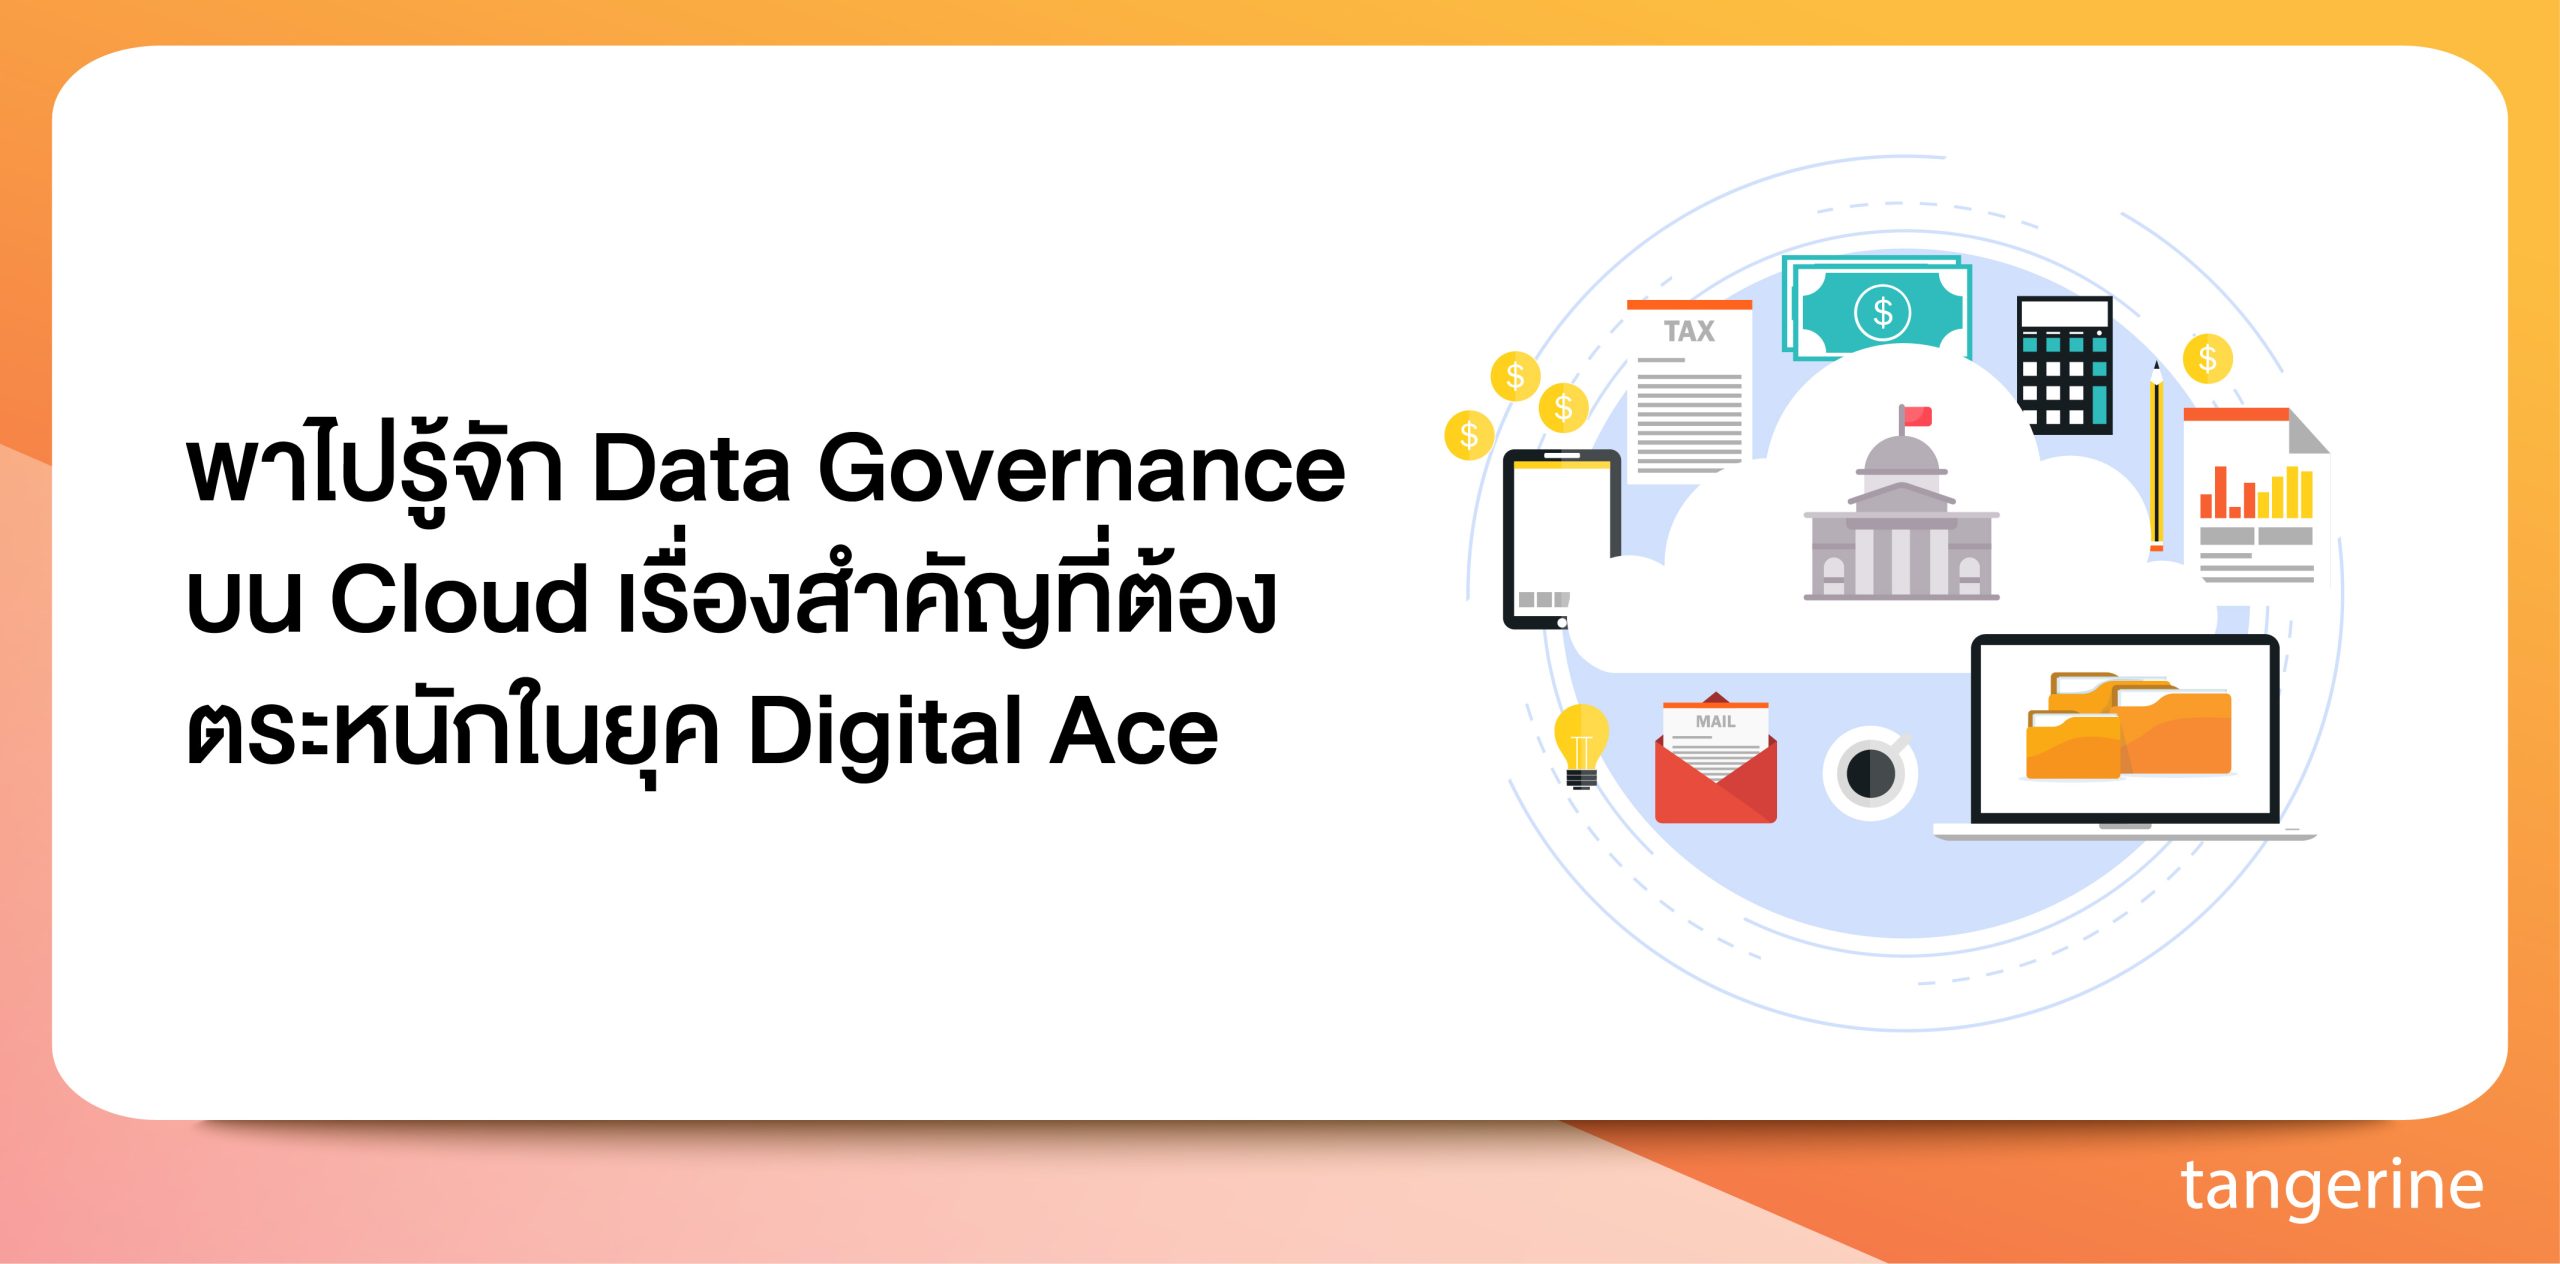 พาไปรู้จัก Data Governance บน Cloud เรื่องสำคัญที่ต้องตระหนักในยุค Digital Ace